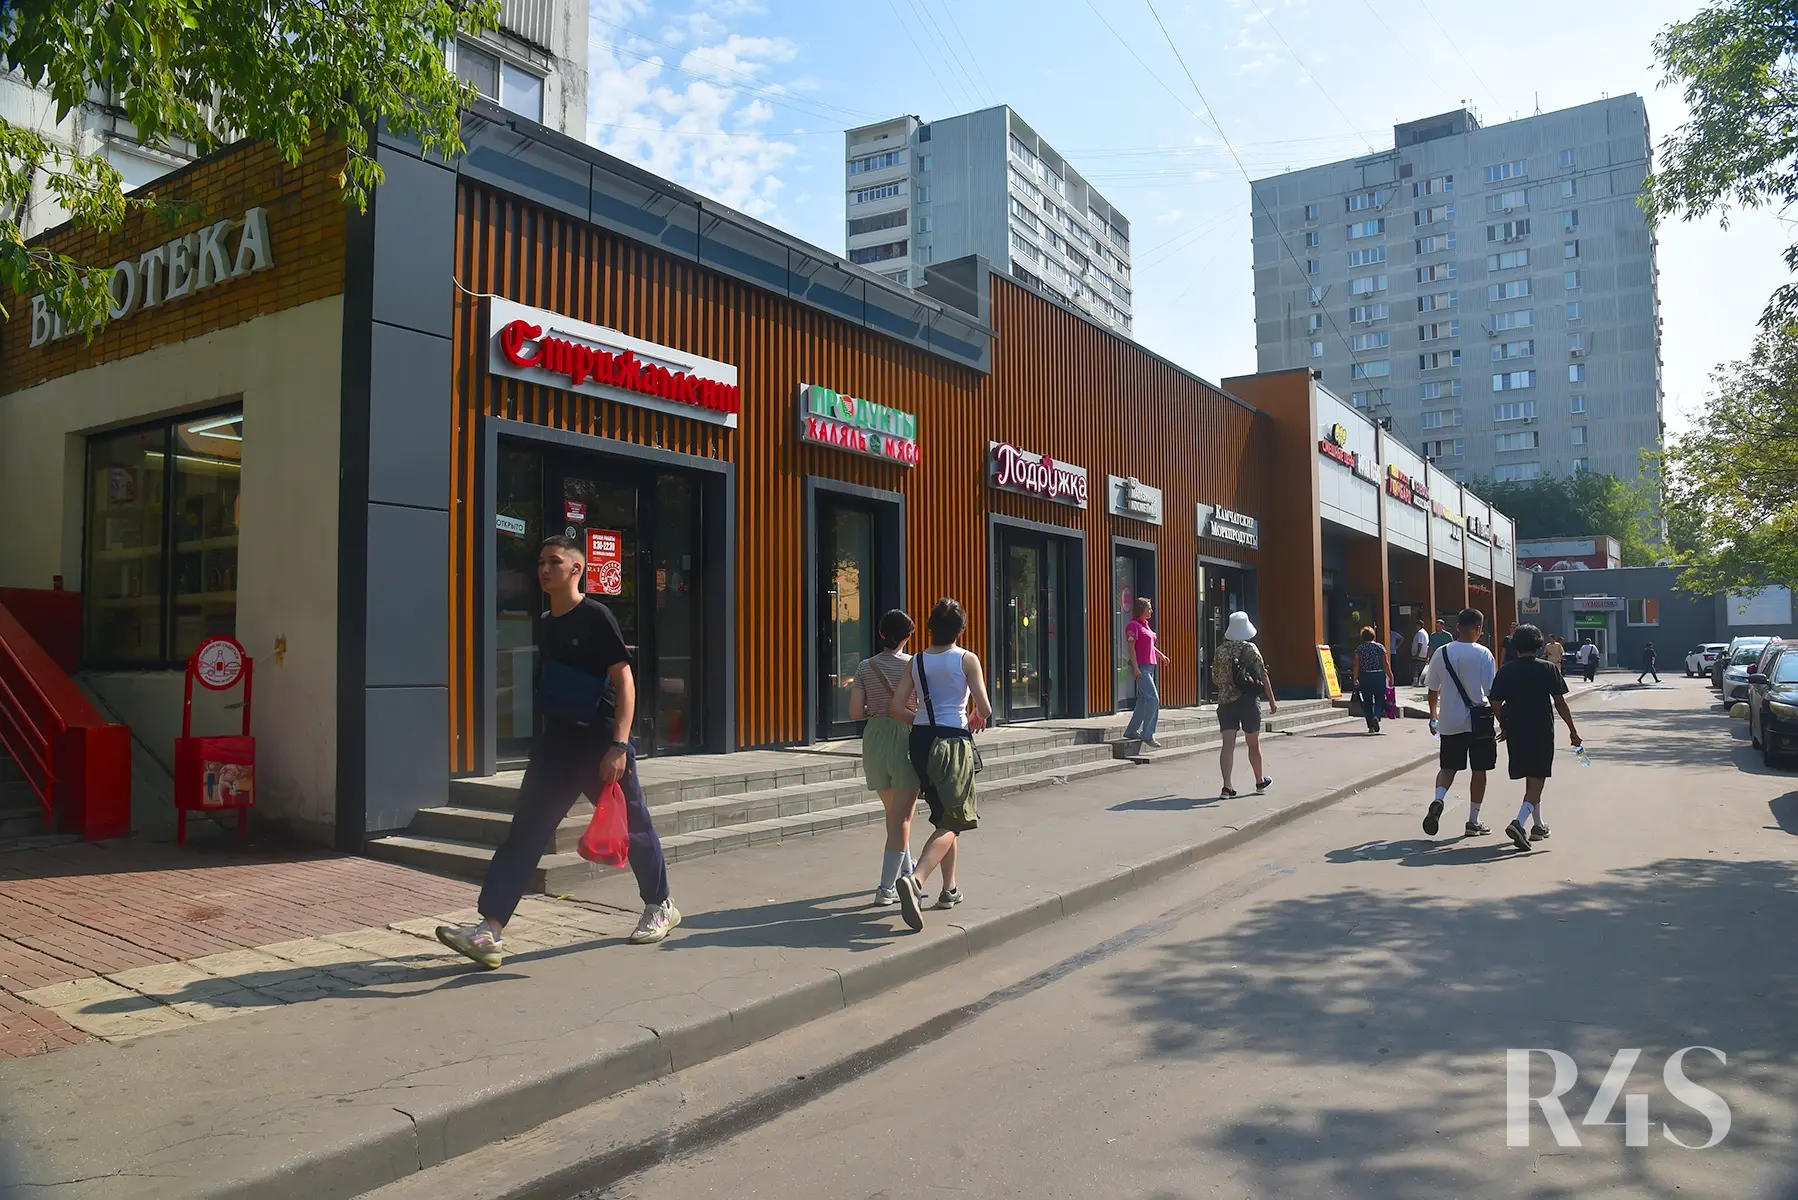 Аренда торговых помещений площадью 187.9 - 739.9 м2 в Москве:  Краснодарская, 57к3 R4S | Realty4Sale